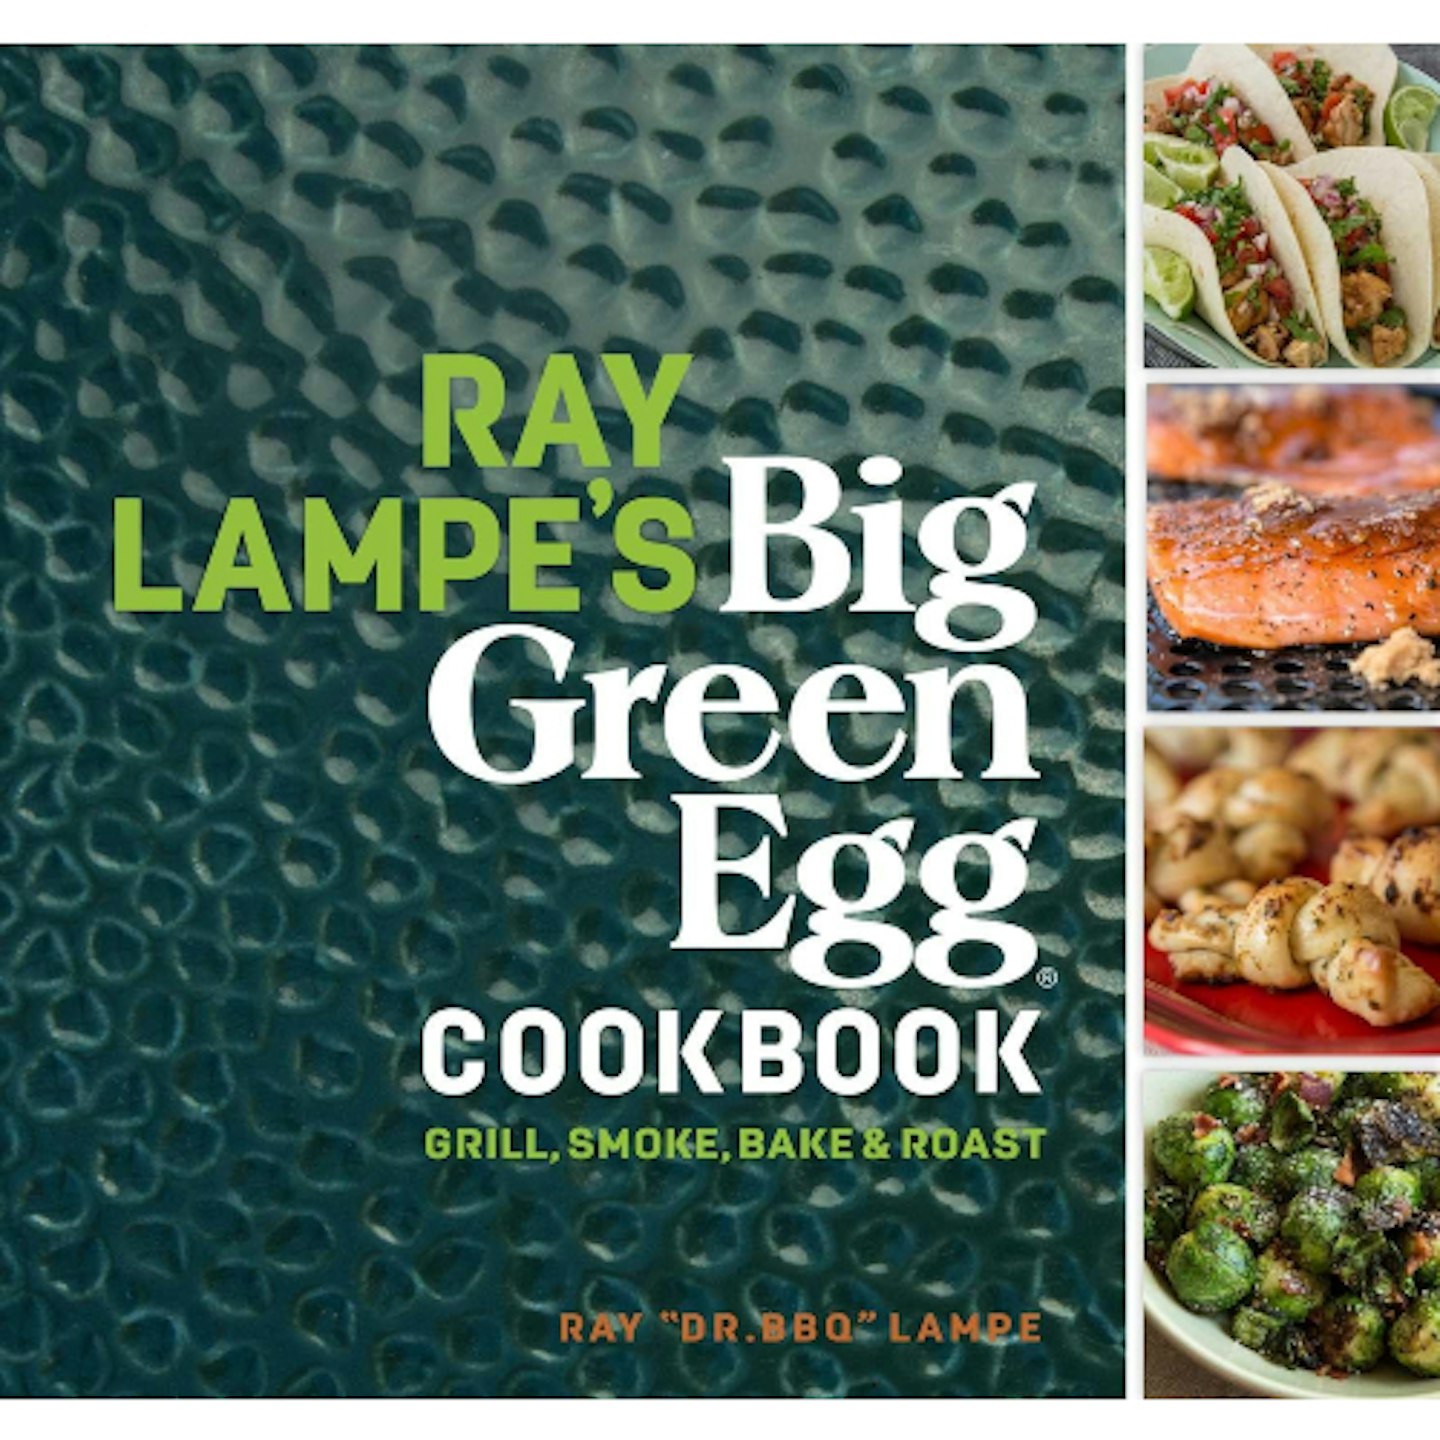 Big Green Egg cookbook